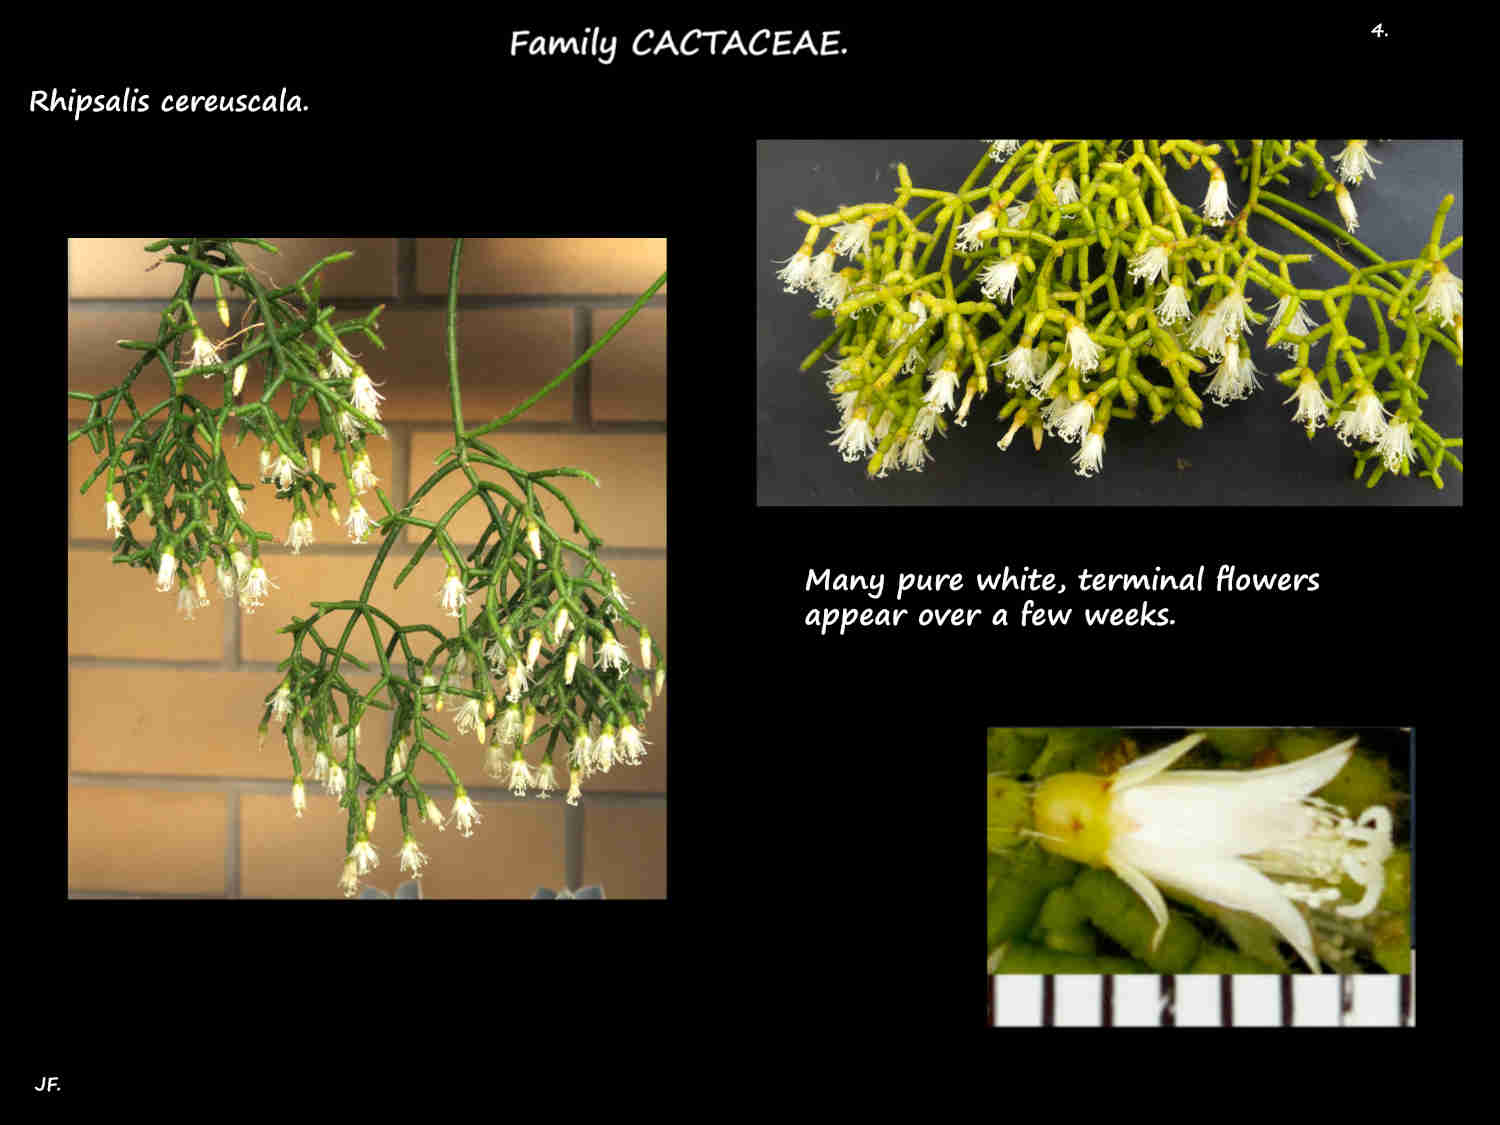 4 Masses of white Mistletoe cactus flowers